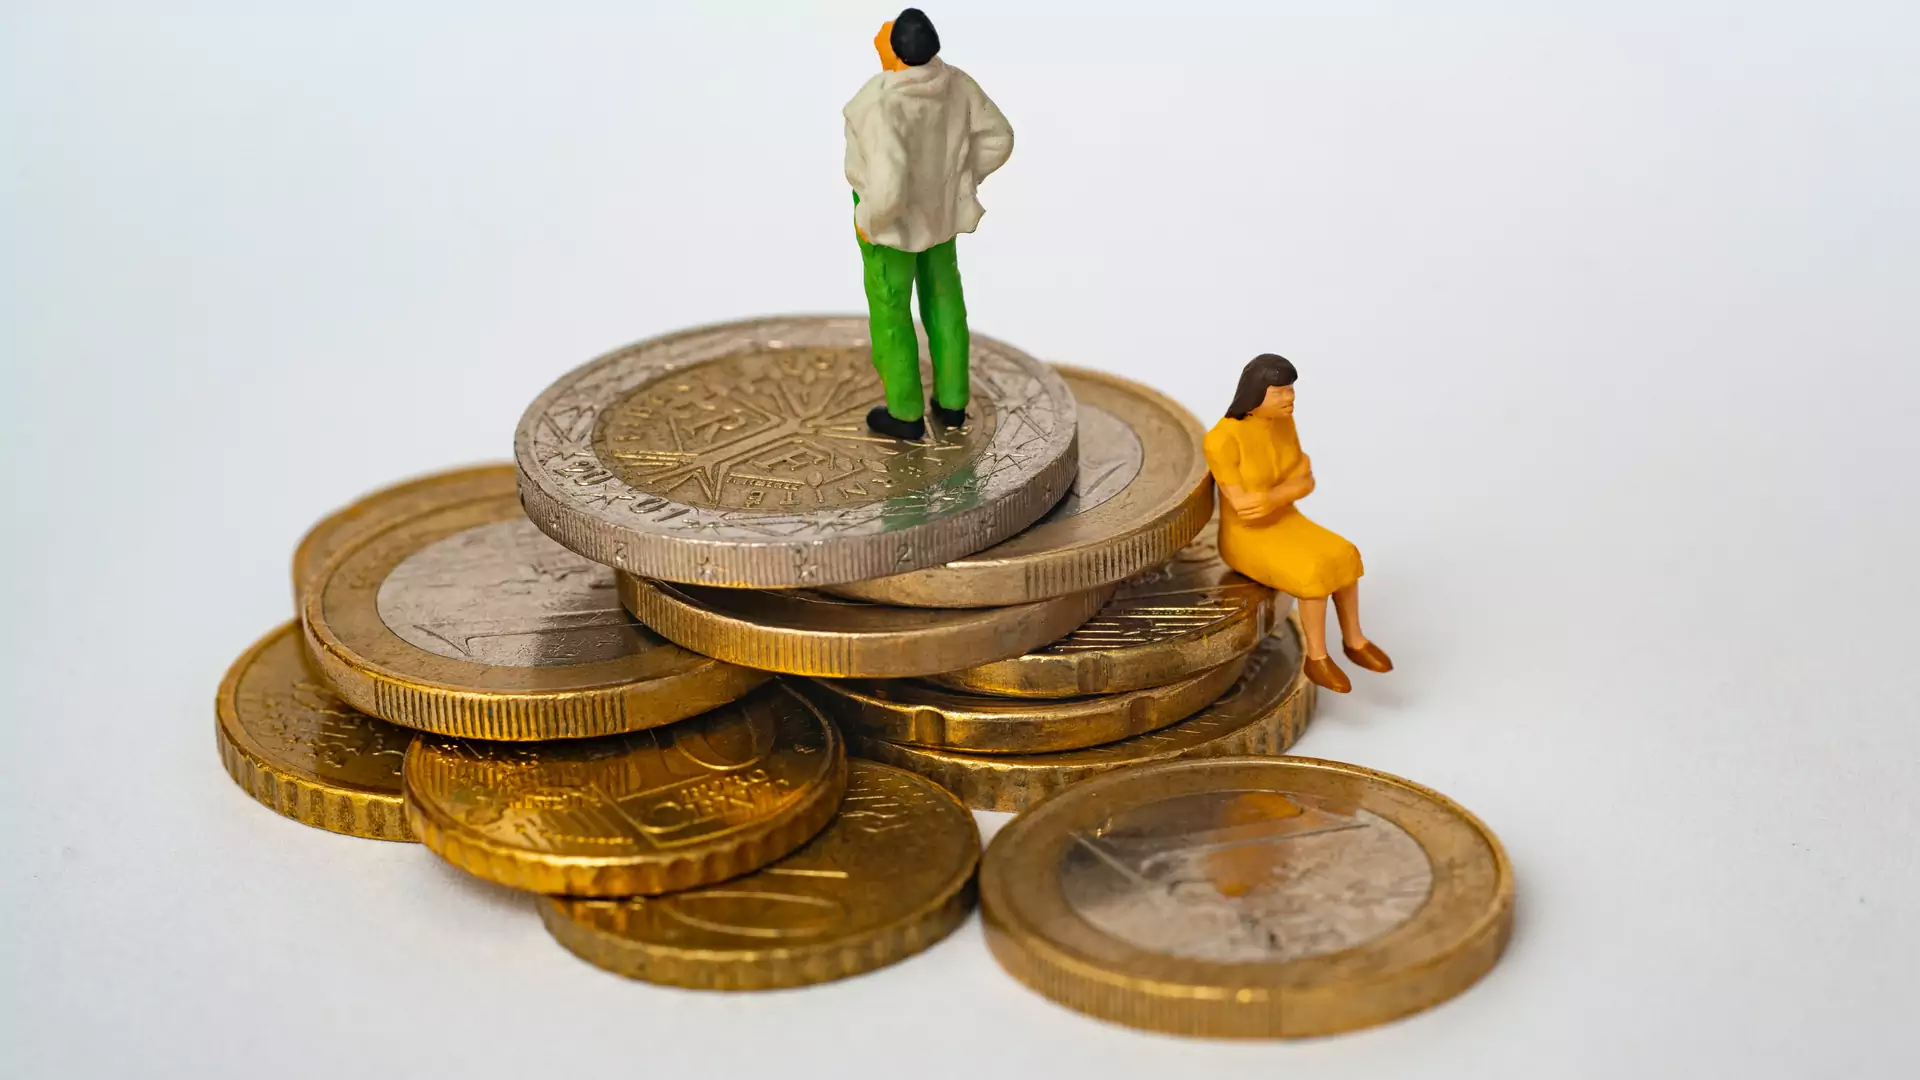 Polaków "nie stać" na rozwód. Inflacja i wspólny kredyt "scalają" małżeństwa